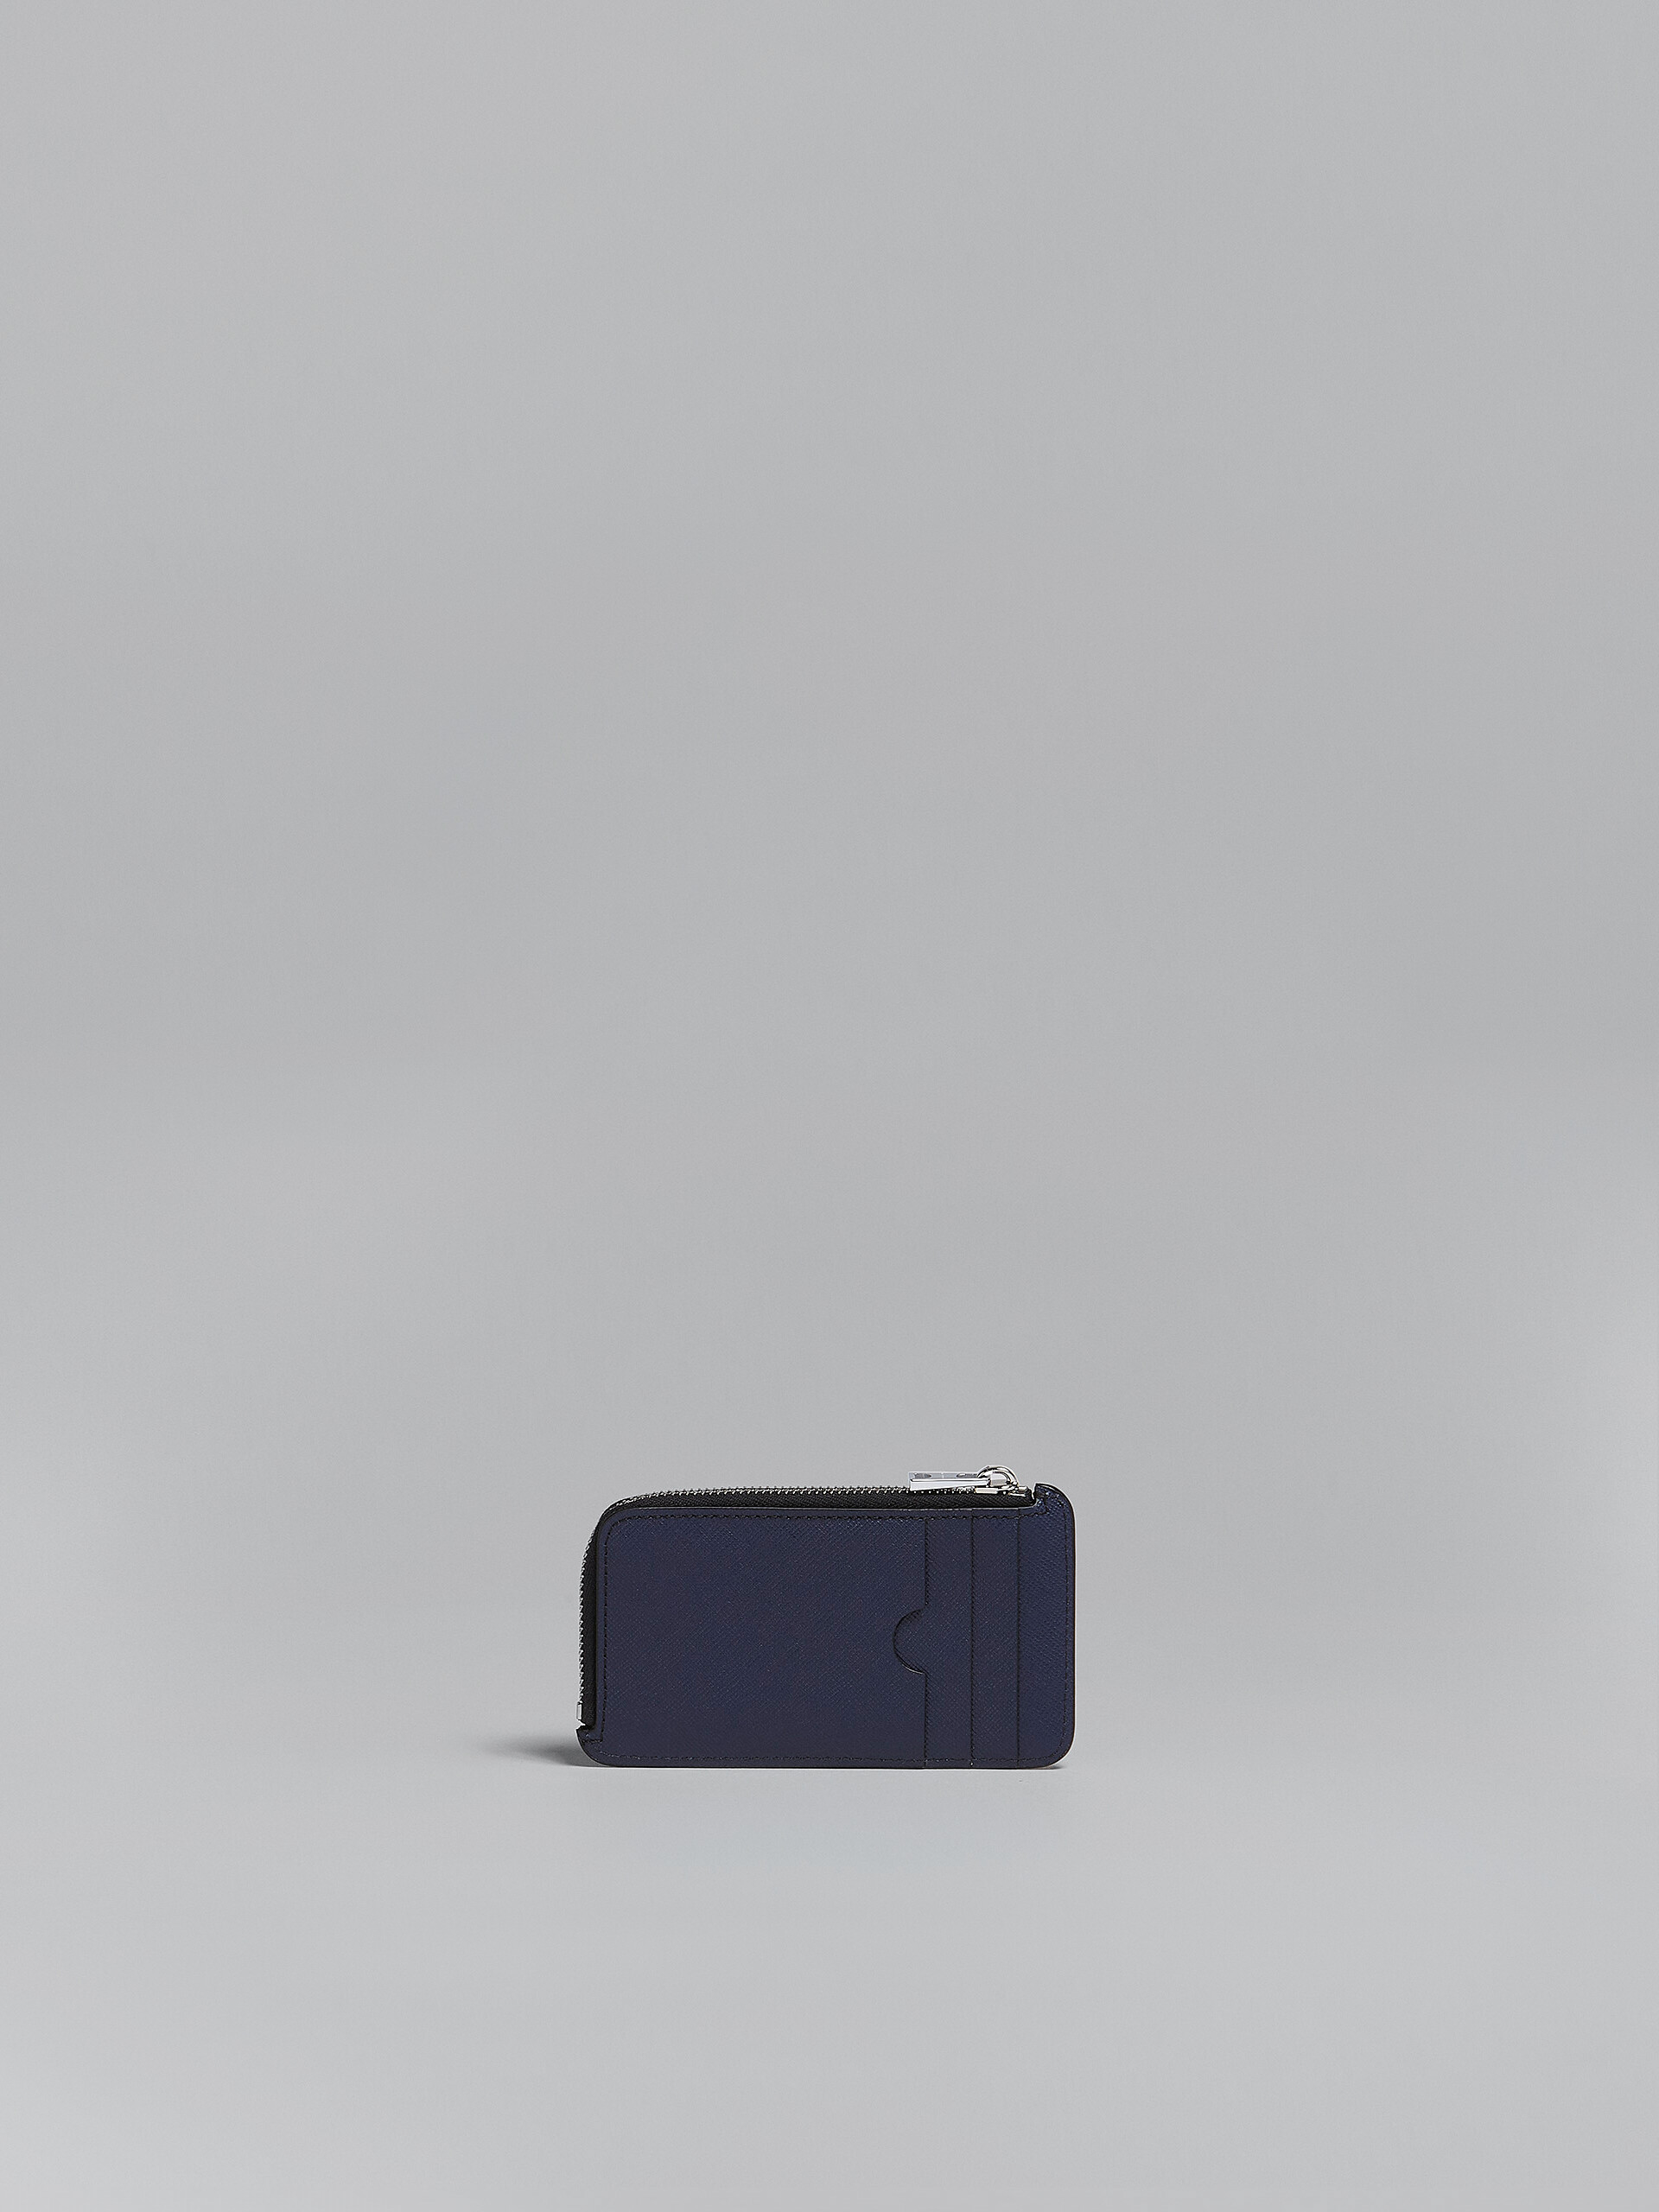 Kartenetui mit umlaufendem Reißverschluss aus Saffiano-Leder in Blau und Schwarz - Brieftaschen - Image 3